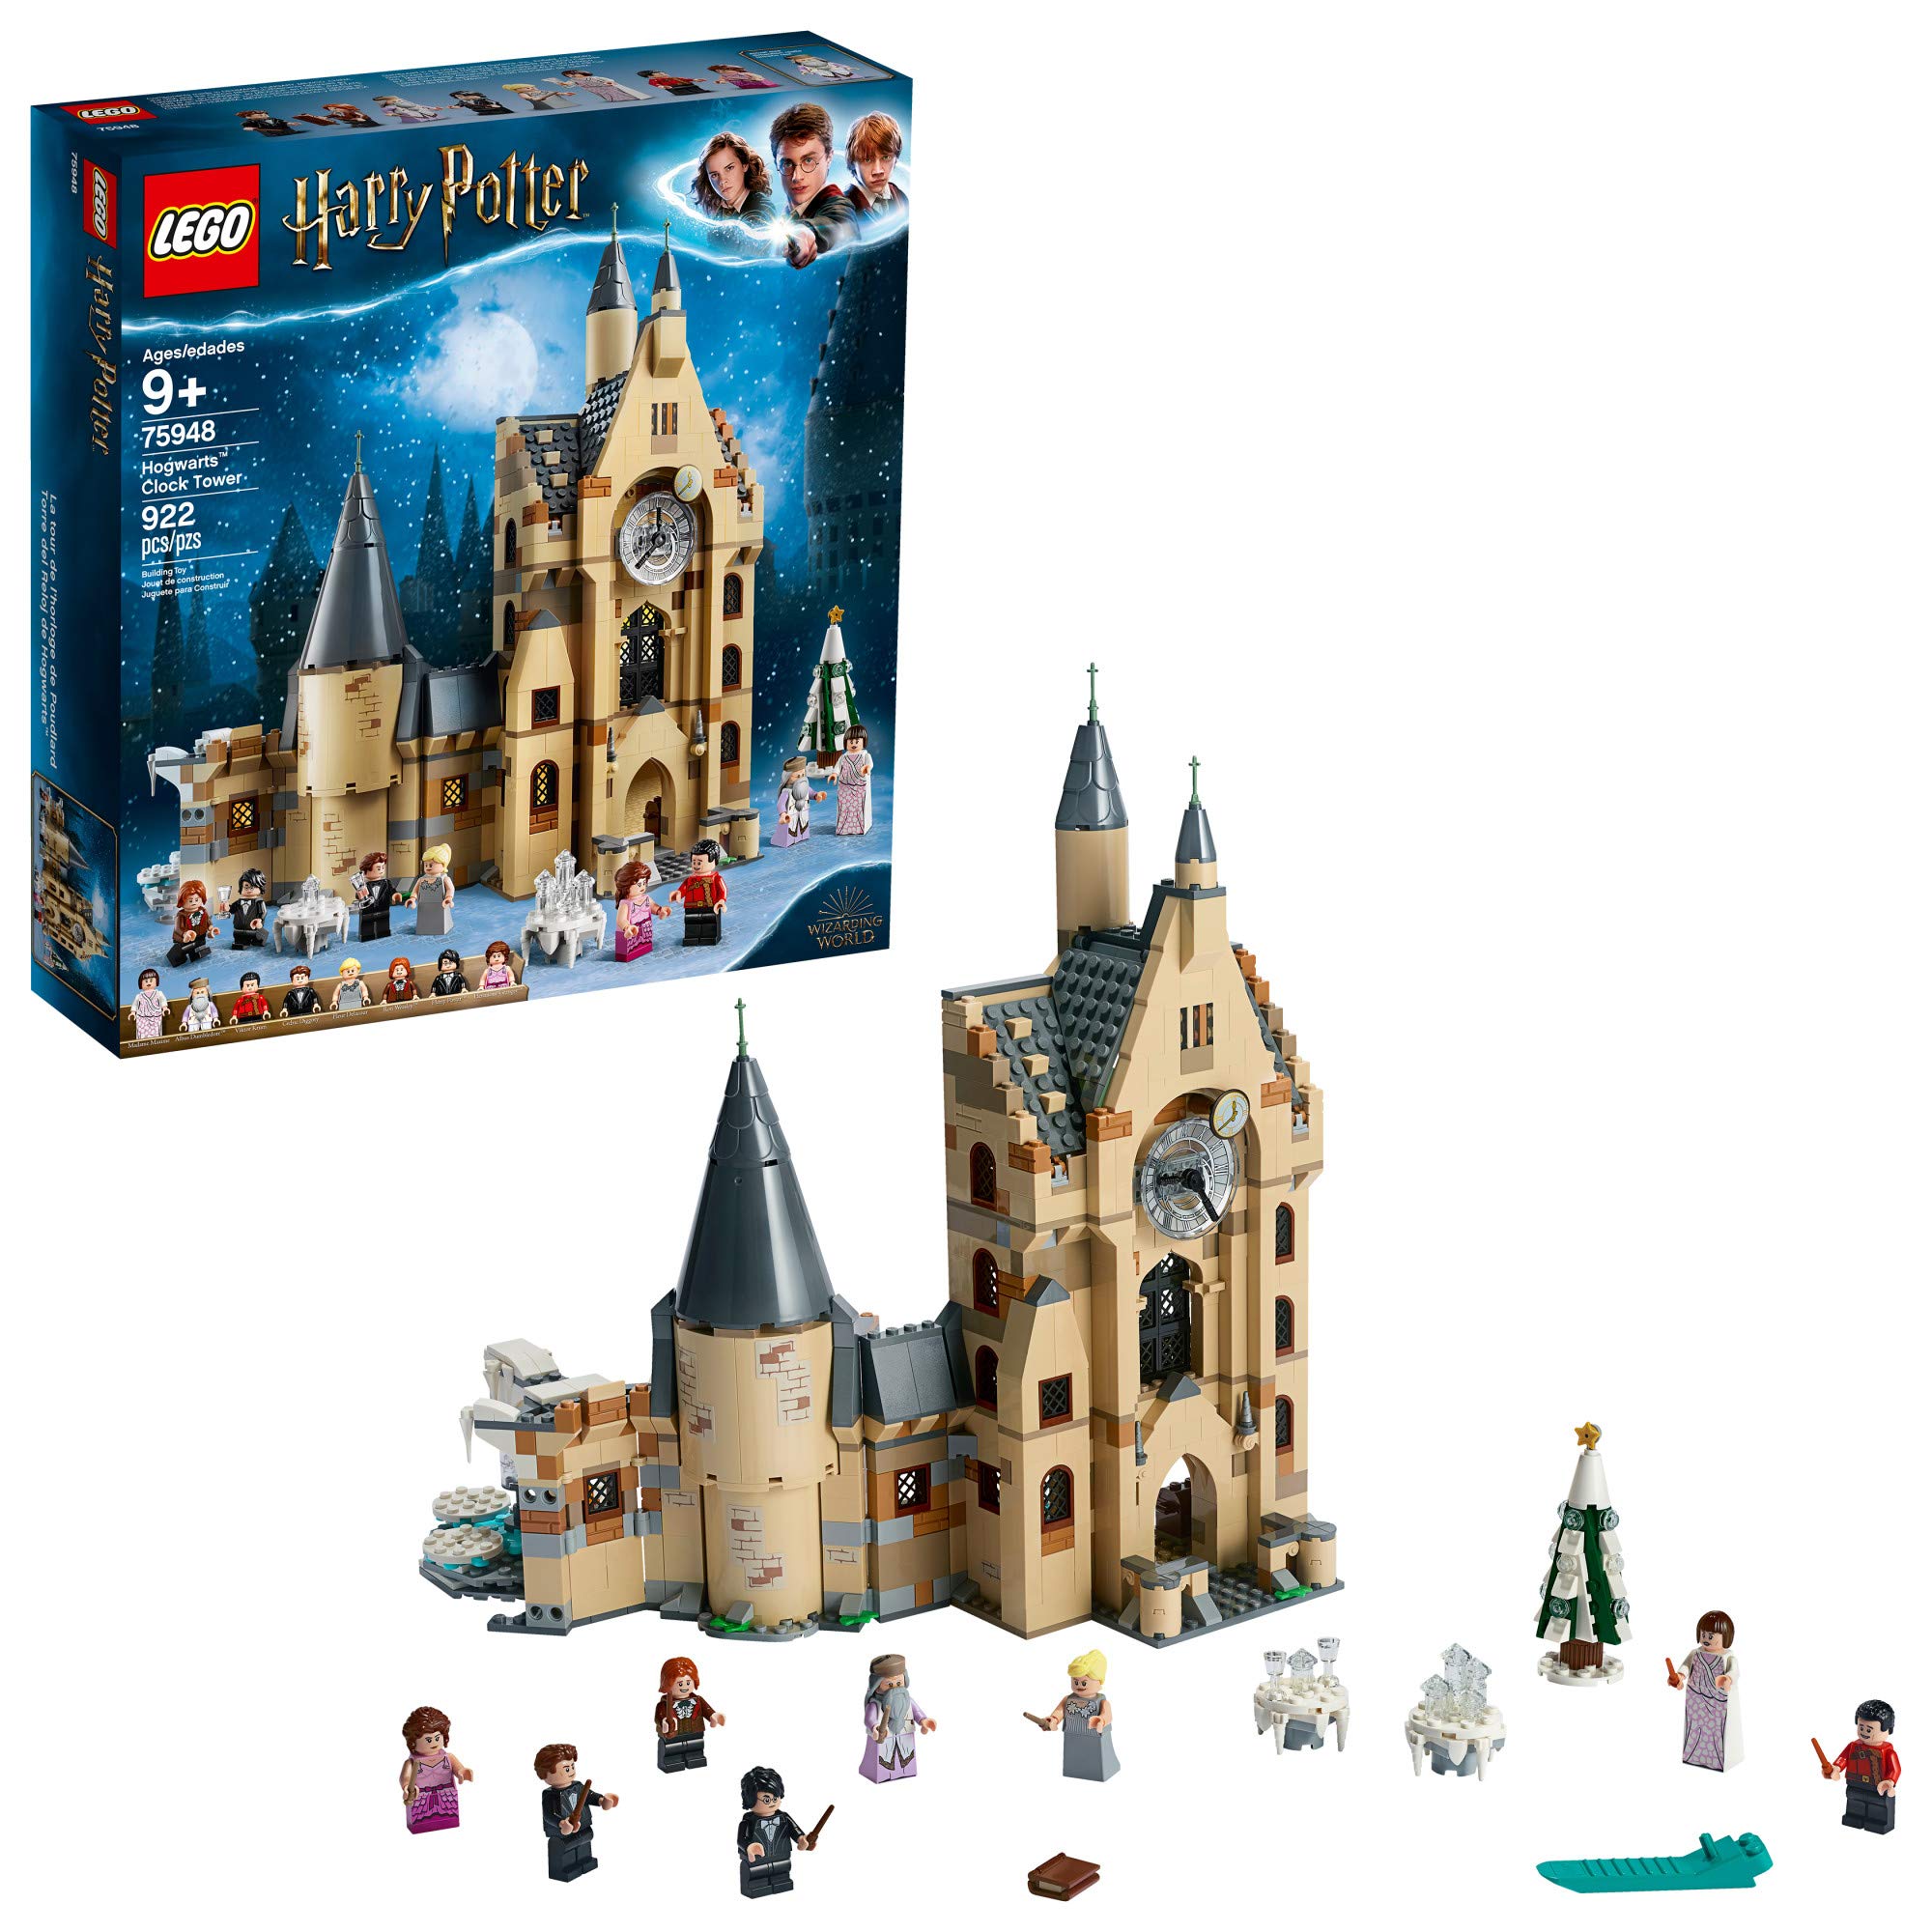  LEGO 哈利·波特霍格沃茨钟楼 75948 拼搭和玩乐塔楼套装，含哈利·波特小人仔、热门哈利·波特礼物和玩具套装，包含罗恩·韦斯莱、赫敏·格兰杰等（922...